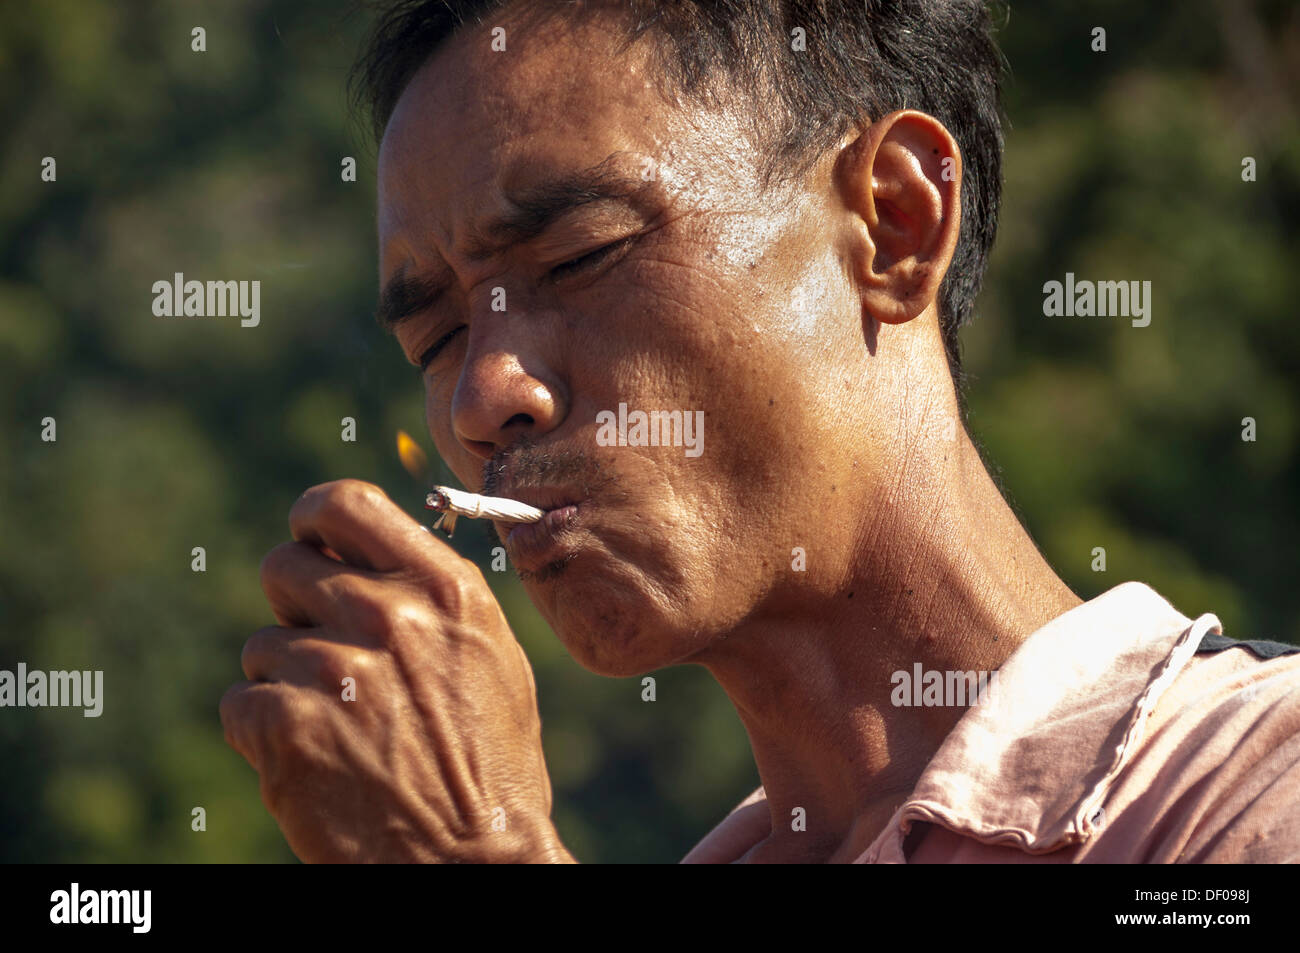 L'homme de la Shan ou minorité ethnique Thai Yai est allumer une cigarette, Soppong ou Pang Mapha, région nord de la Thaïlande, Thaïlande Banque D'Images